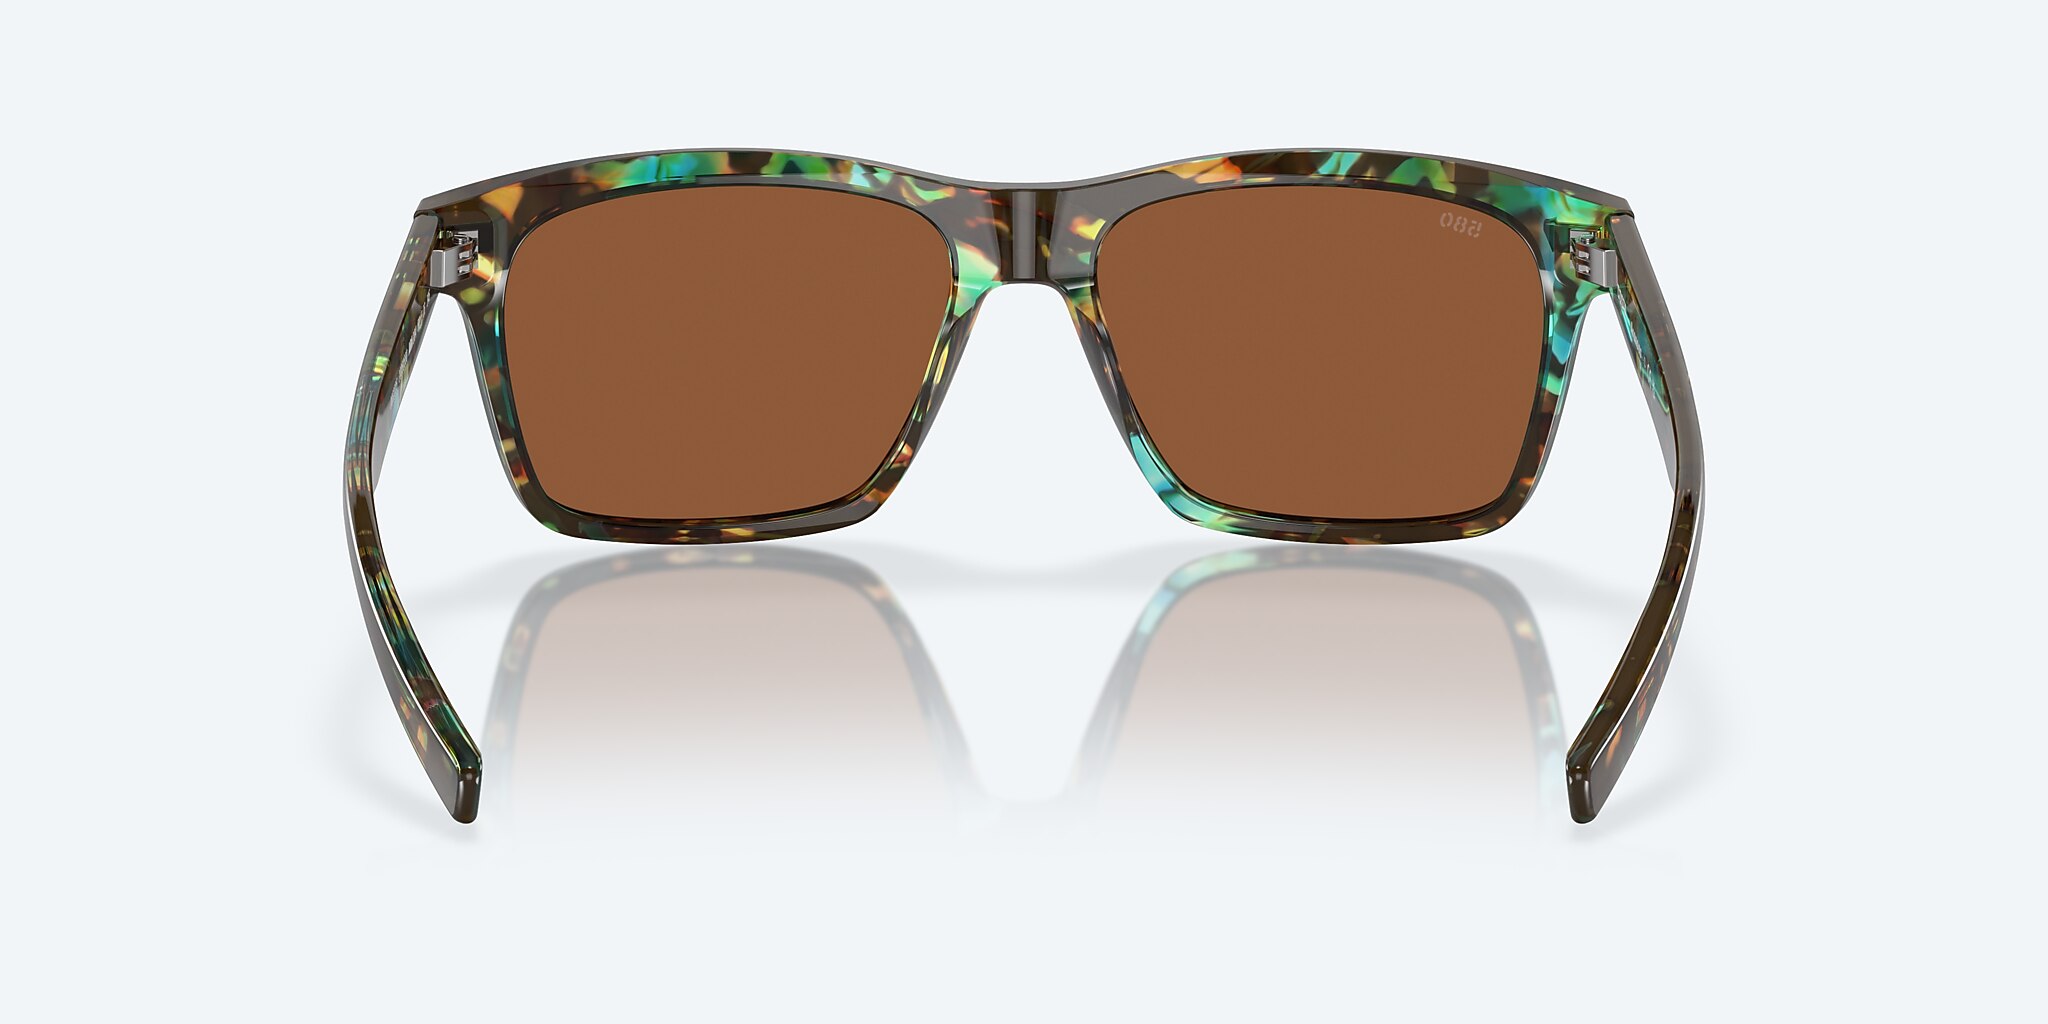 Aransas Polarized Sunglasses in Copper